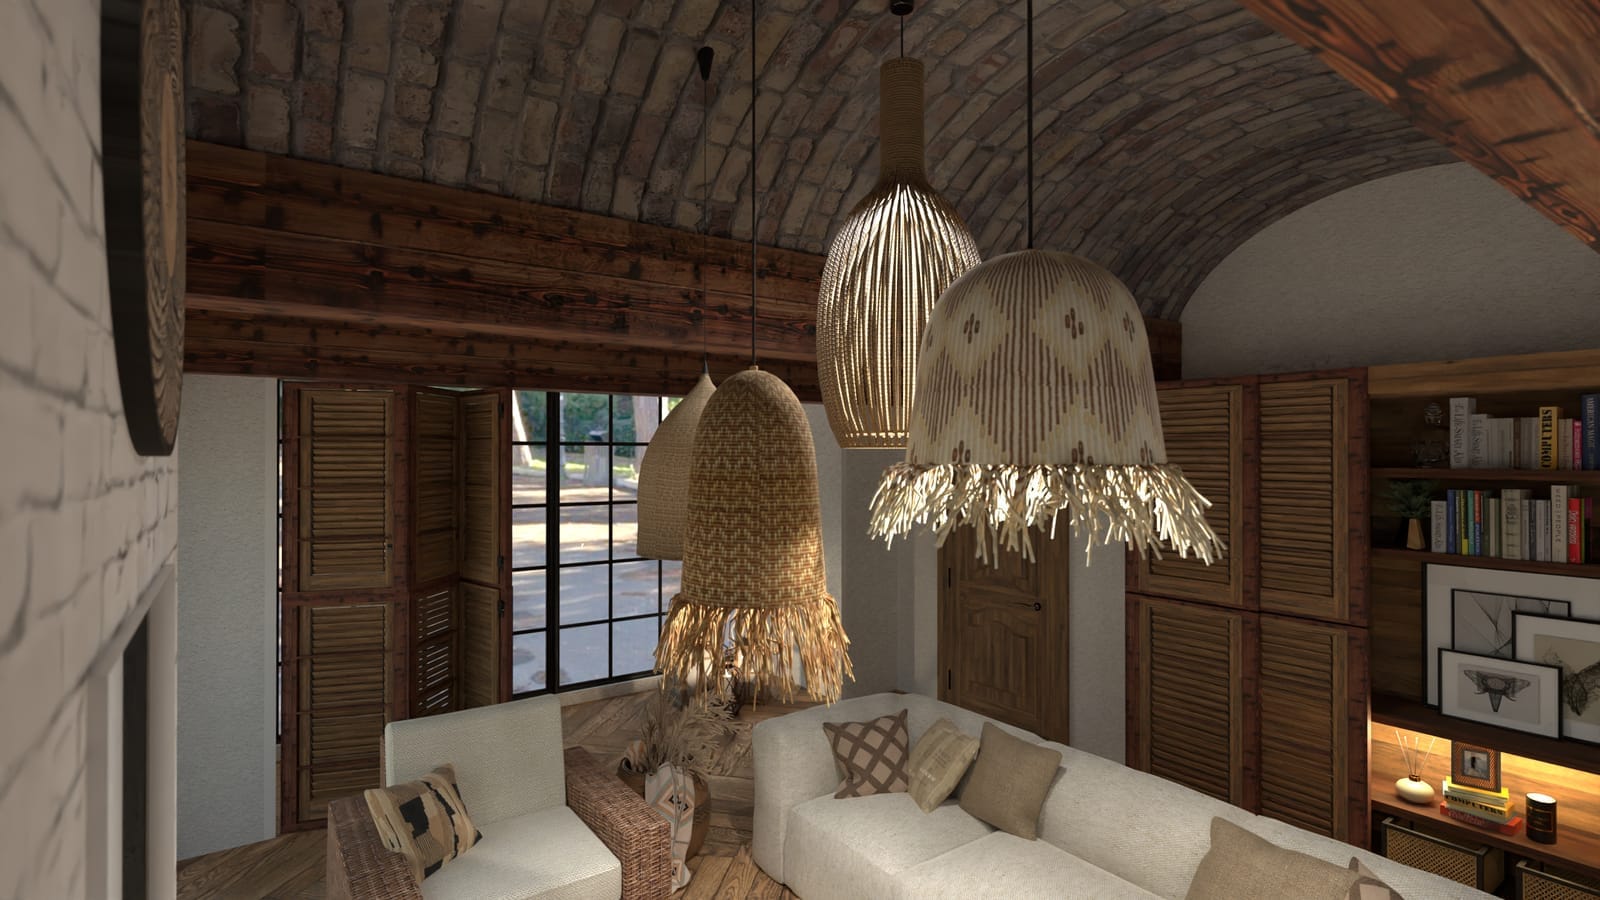 sala de estar de estilo rústico moderno californiano, render planner 5d